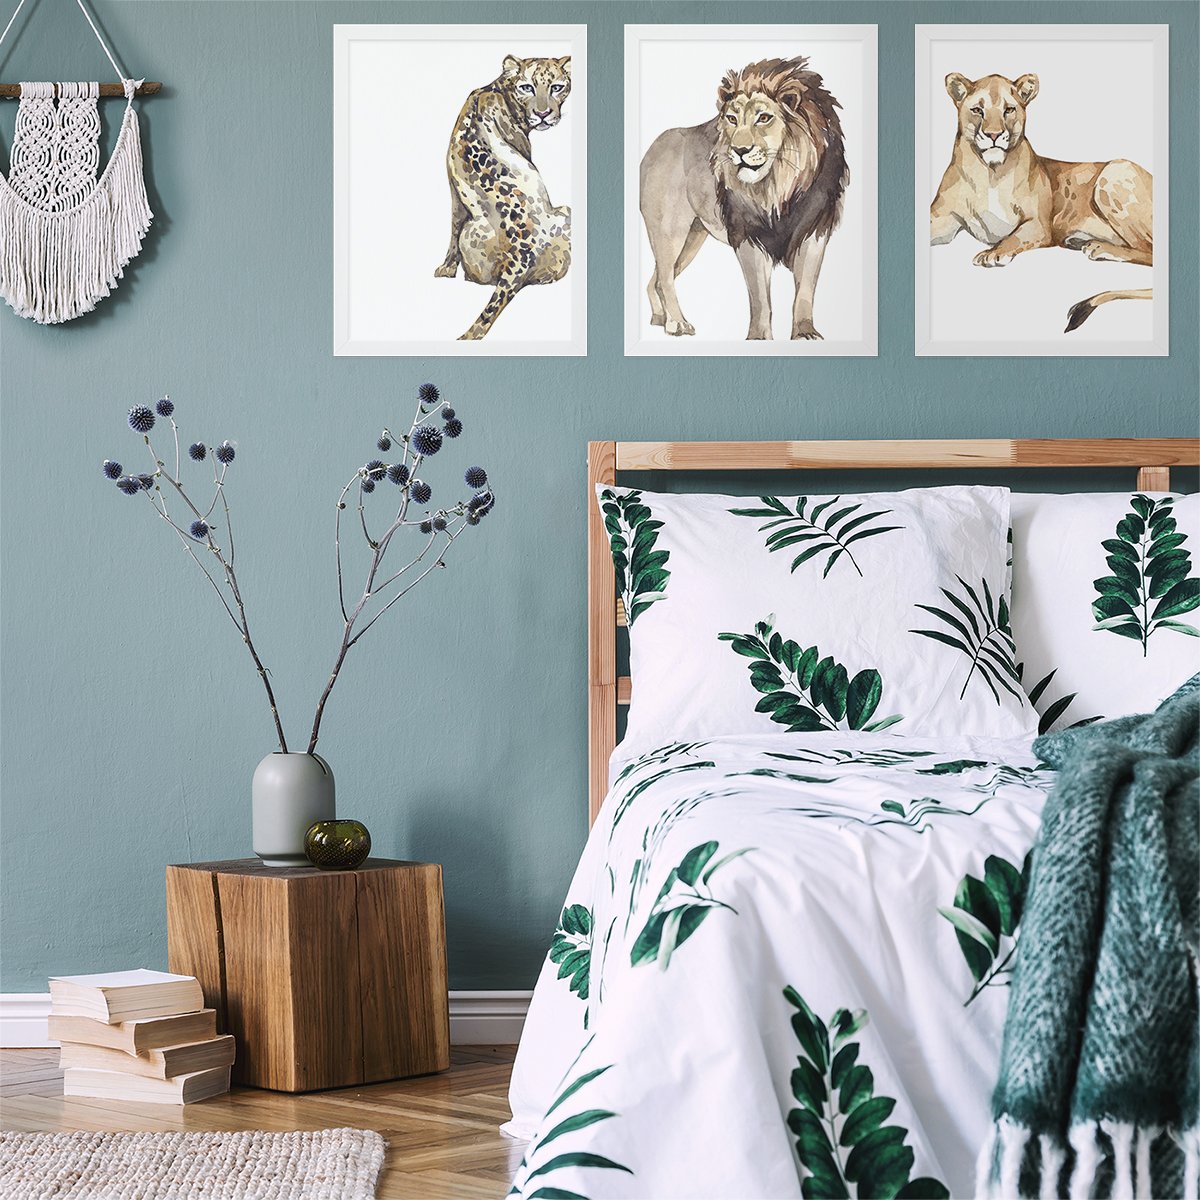 Plakaty do sypialni dzikie koty Afryki lampart, lew i lwica w białych ramkach powieszone nad łóżkiem